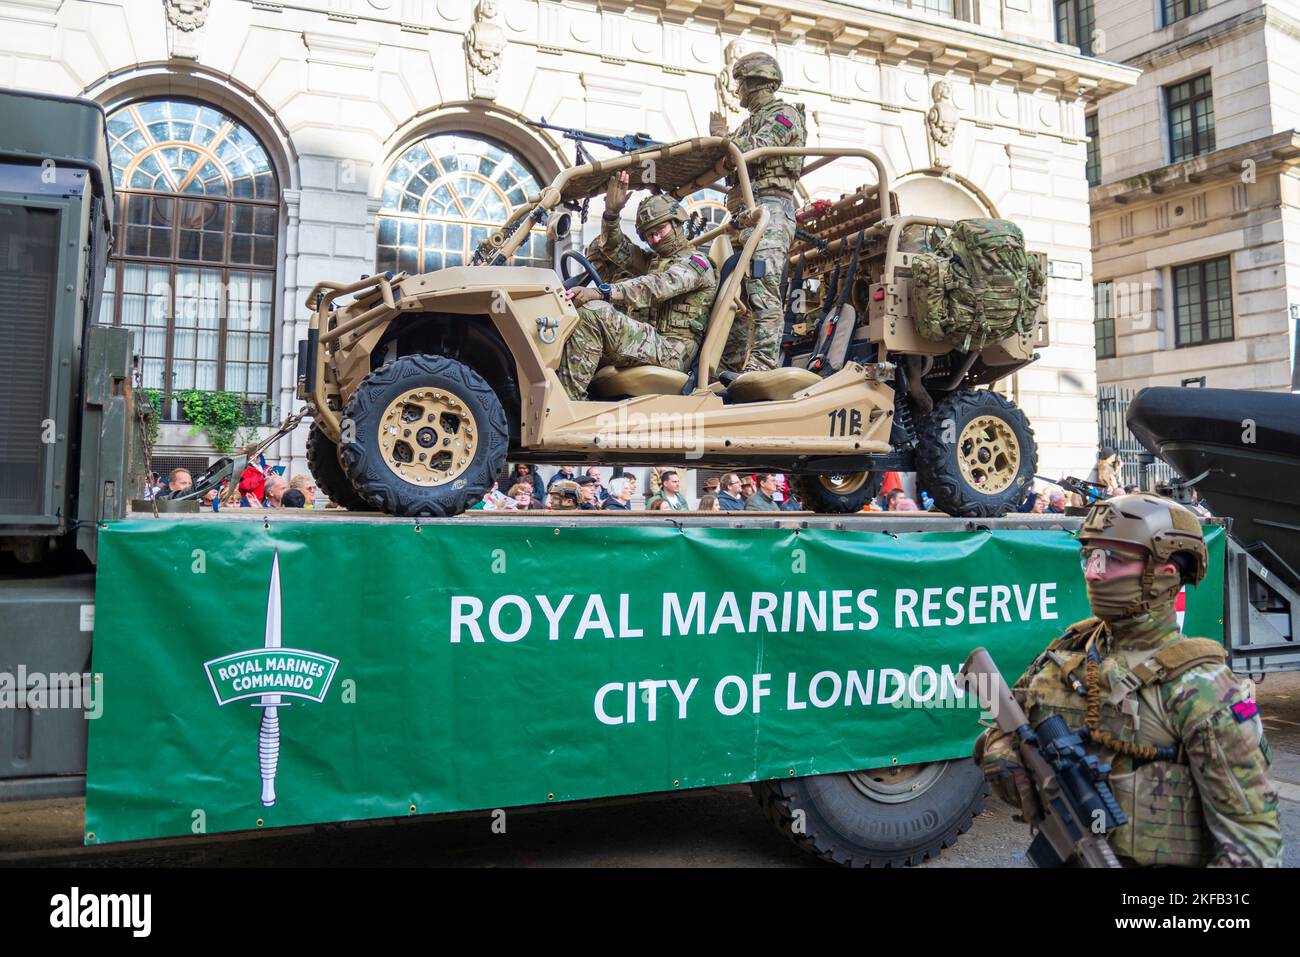 Royal Marines Reserve City of London flotte au Lord Mayor's Show Parade dans la City of London, Royaume-Uni. Ecran Royal Marines Commando Polaris MRZR-D4 Banque D'Images